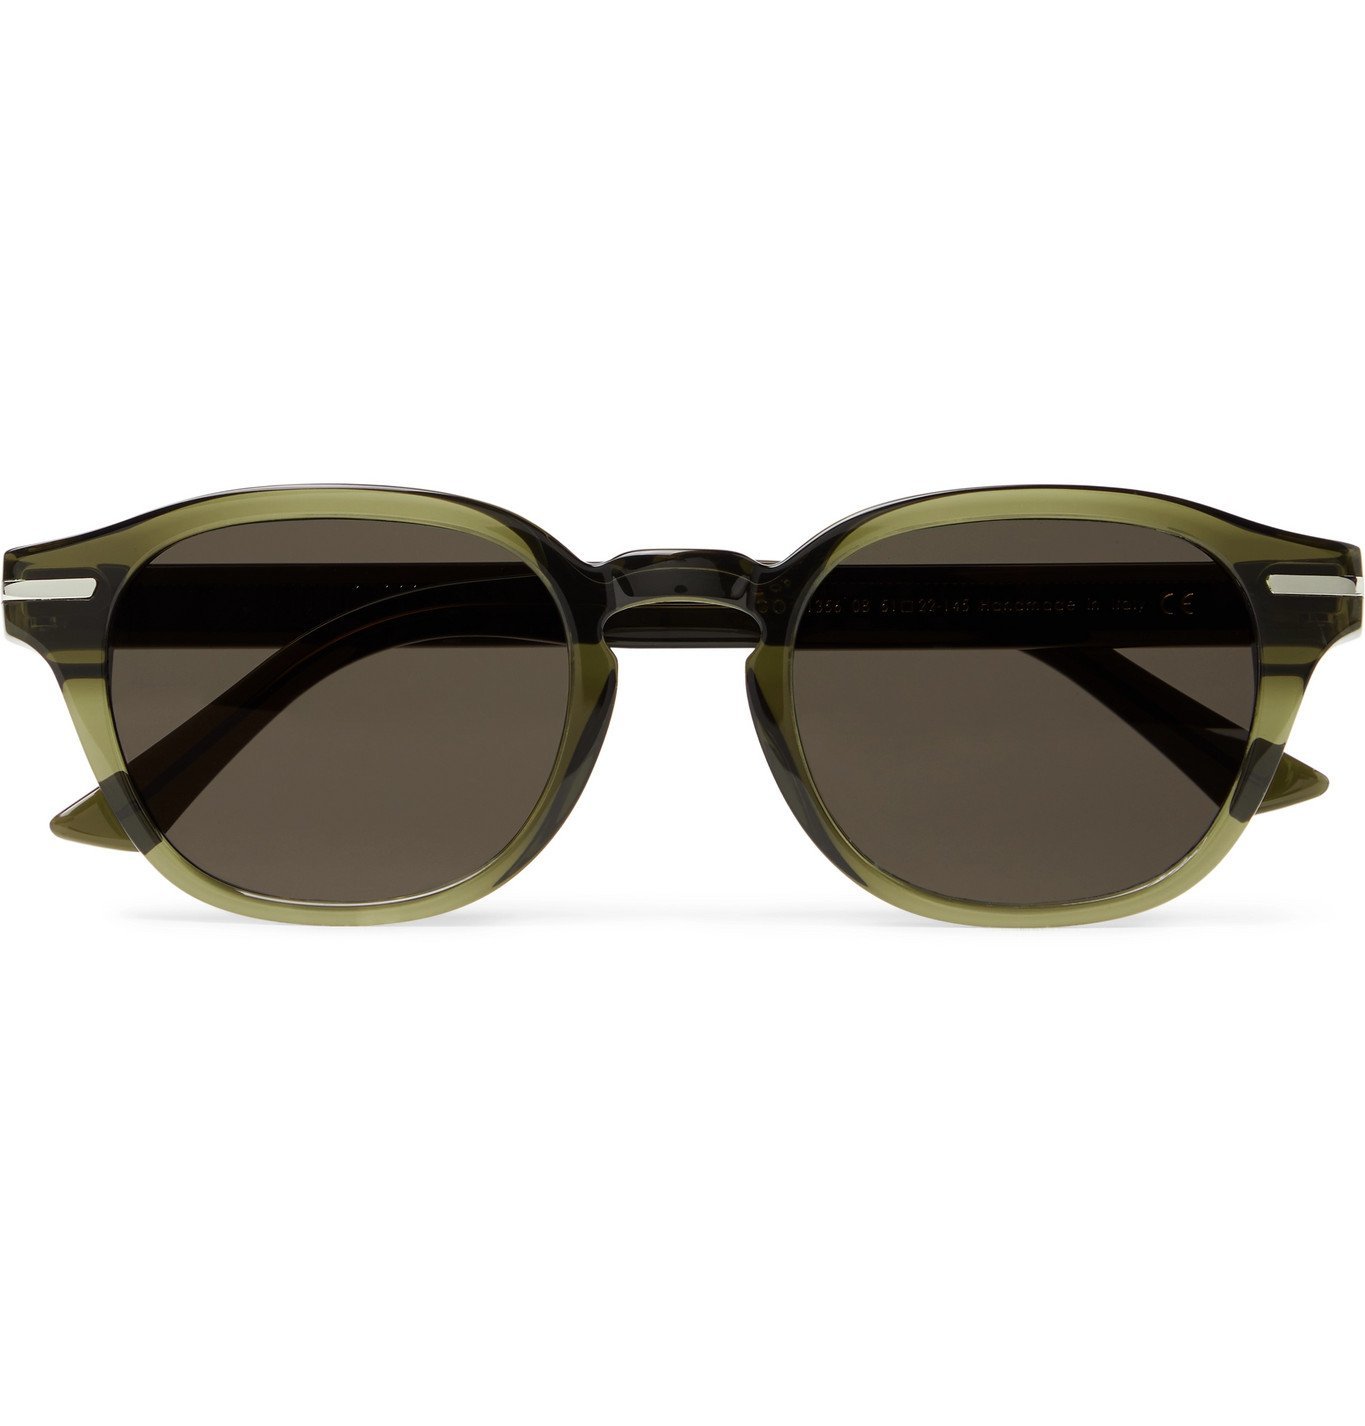 CUTLER AND GROSS - 1356 D-Frame Acetate Sunglasses - Green Cutler and Gross